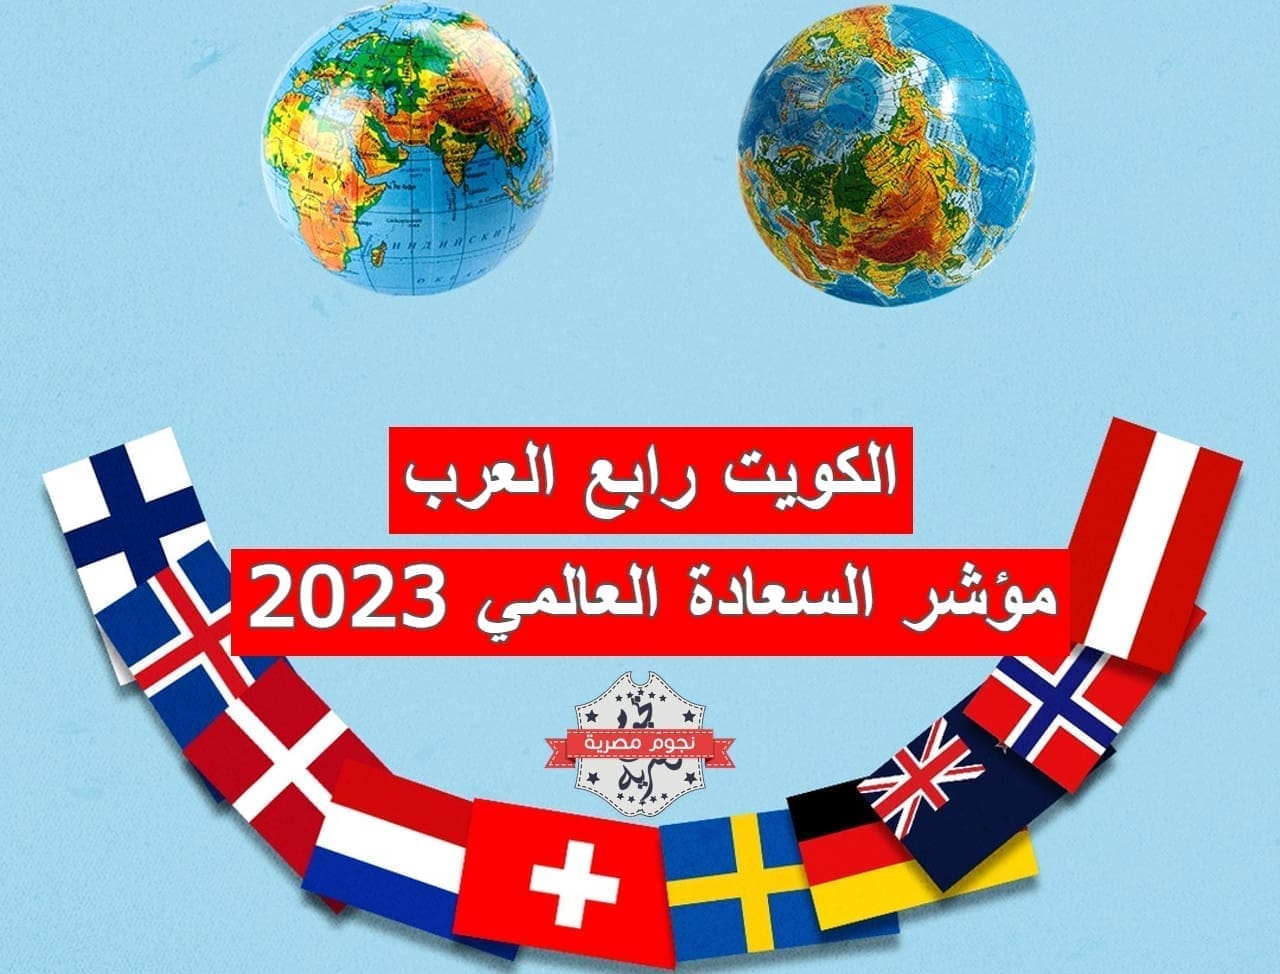 الكويت رابع العرب في مؤشر السعادة العالمي 2023 (مصدر الصورة. موقع ذا أتلانتيك)